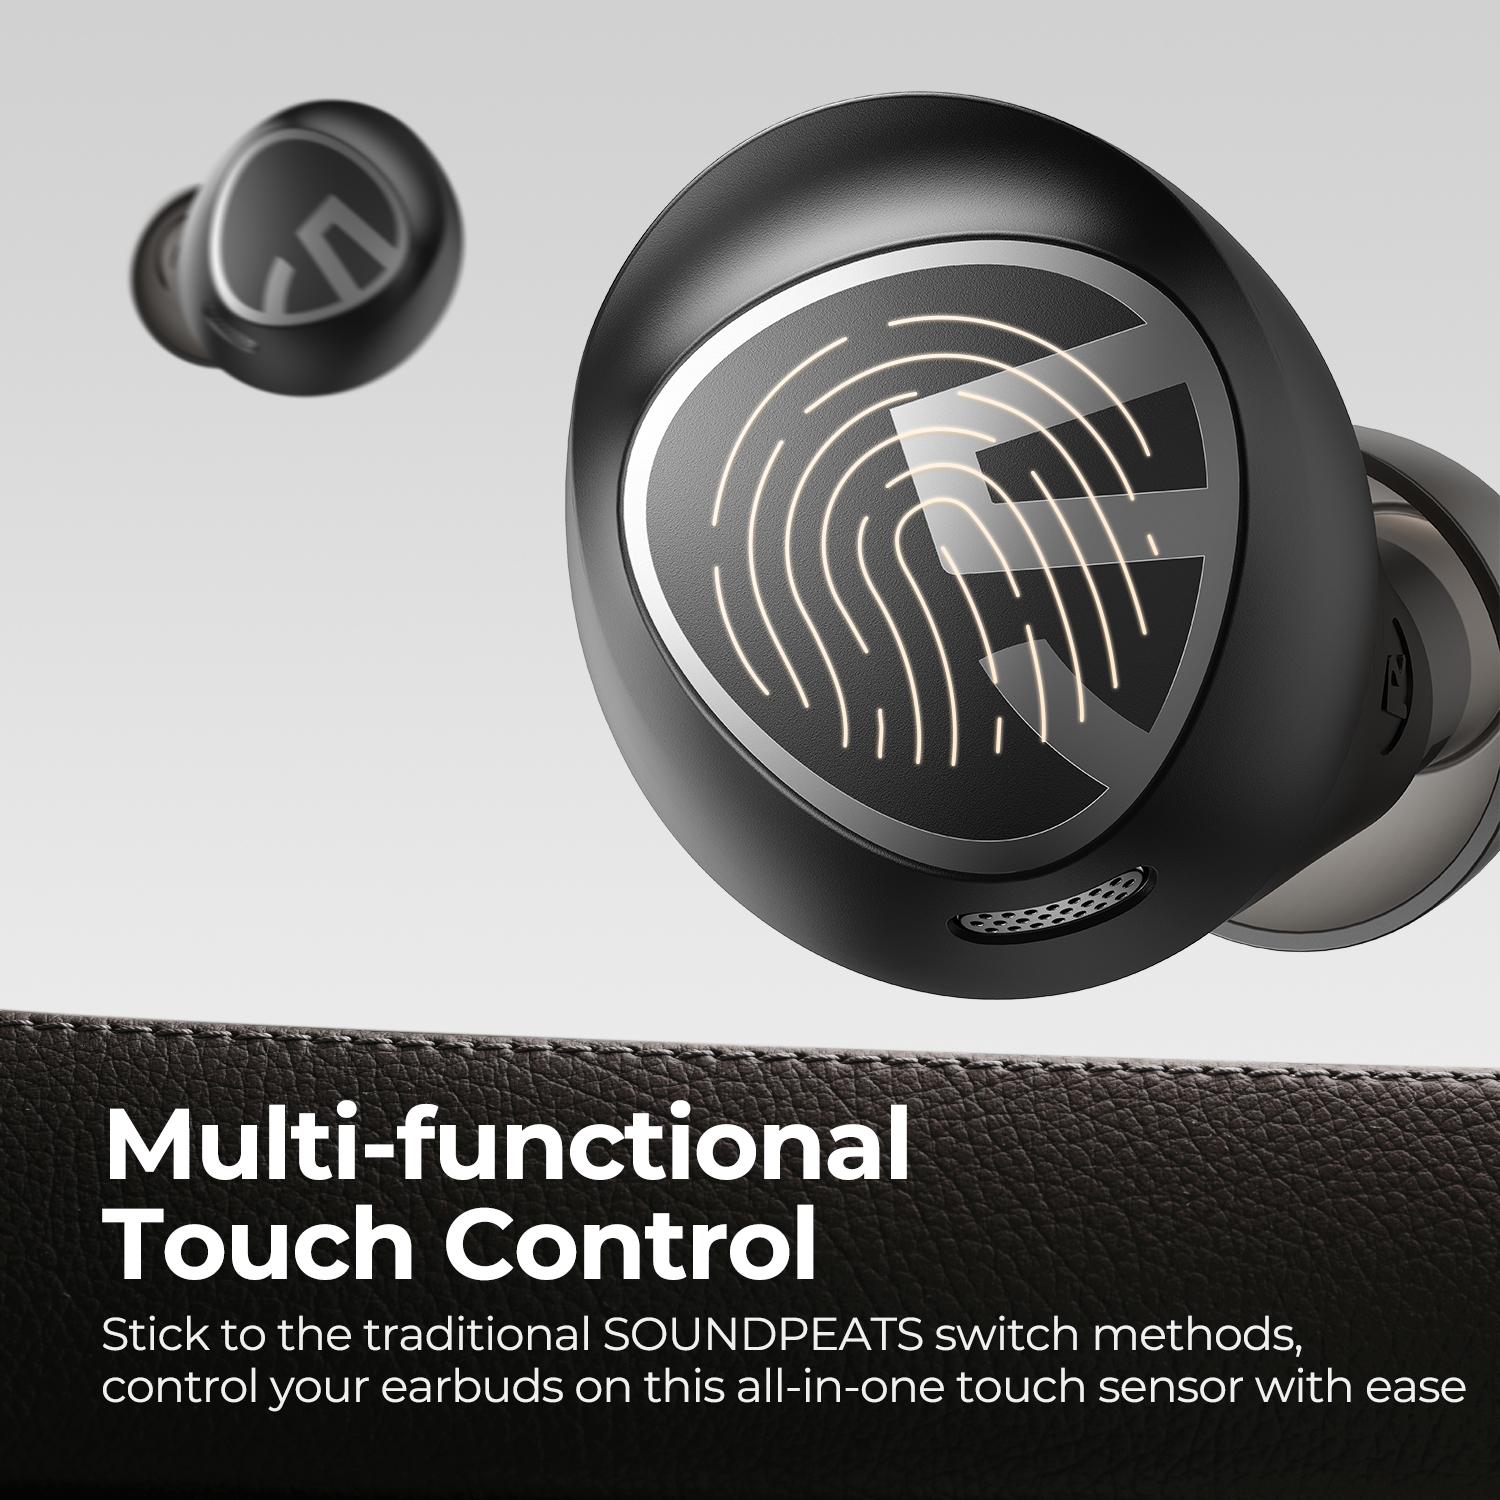 Soundpeats Free2 Classic: Mẫu tai nghe bình dân với nhiều tính năng vượt trội - Ảnh 2.